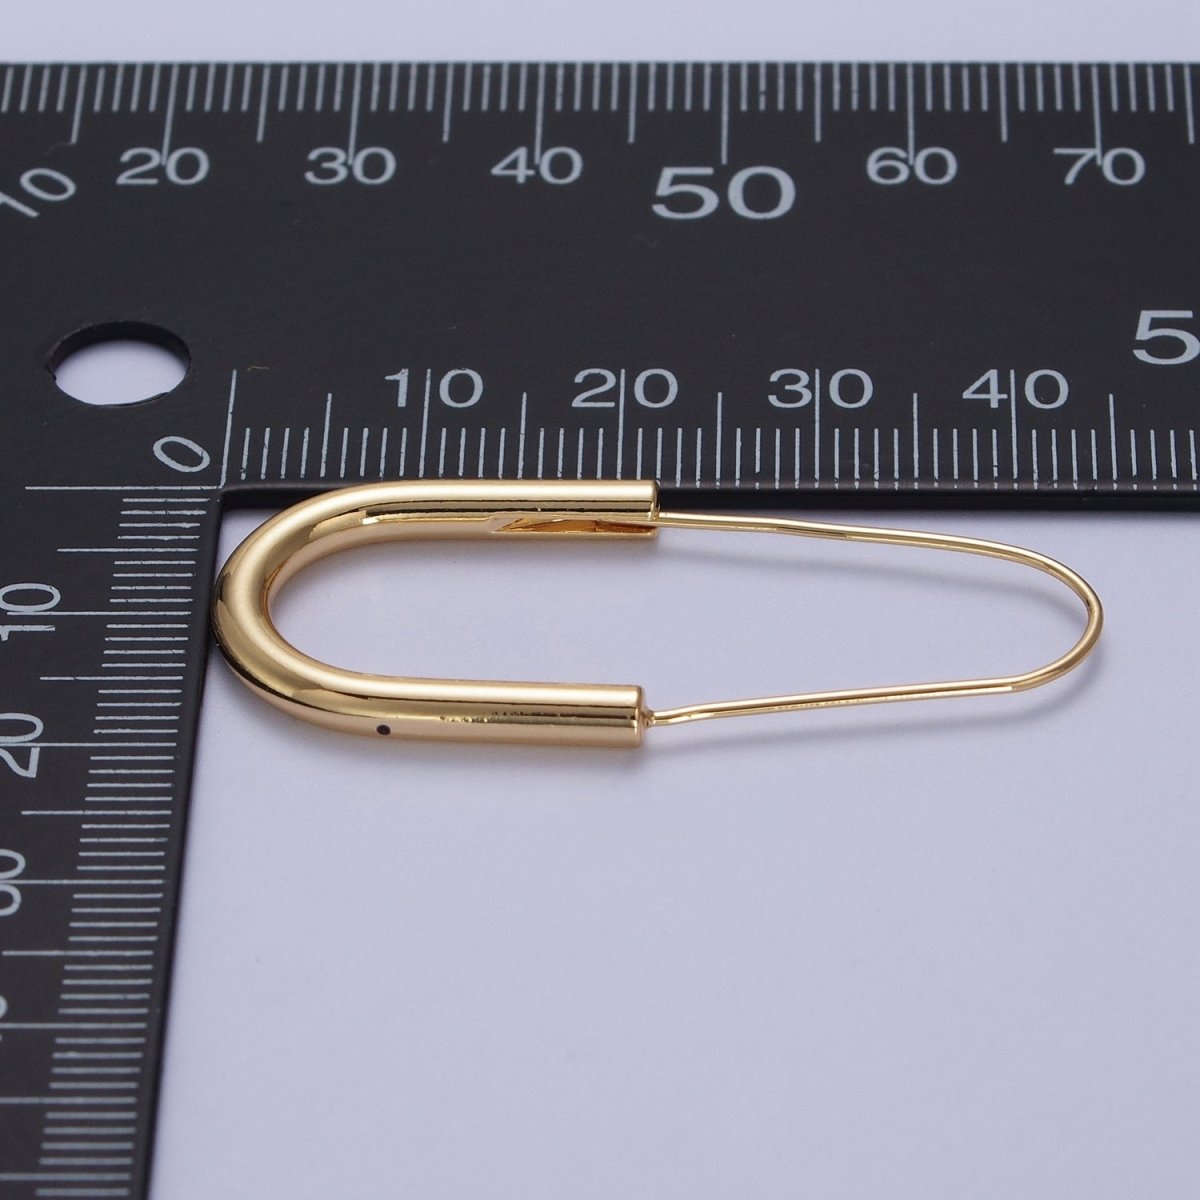 Gold Crescent U Hoop Long Hook Minimalist Earrings | Y-146 - DLUXCA